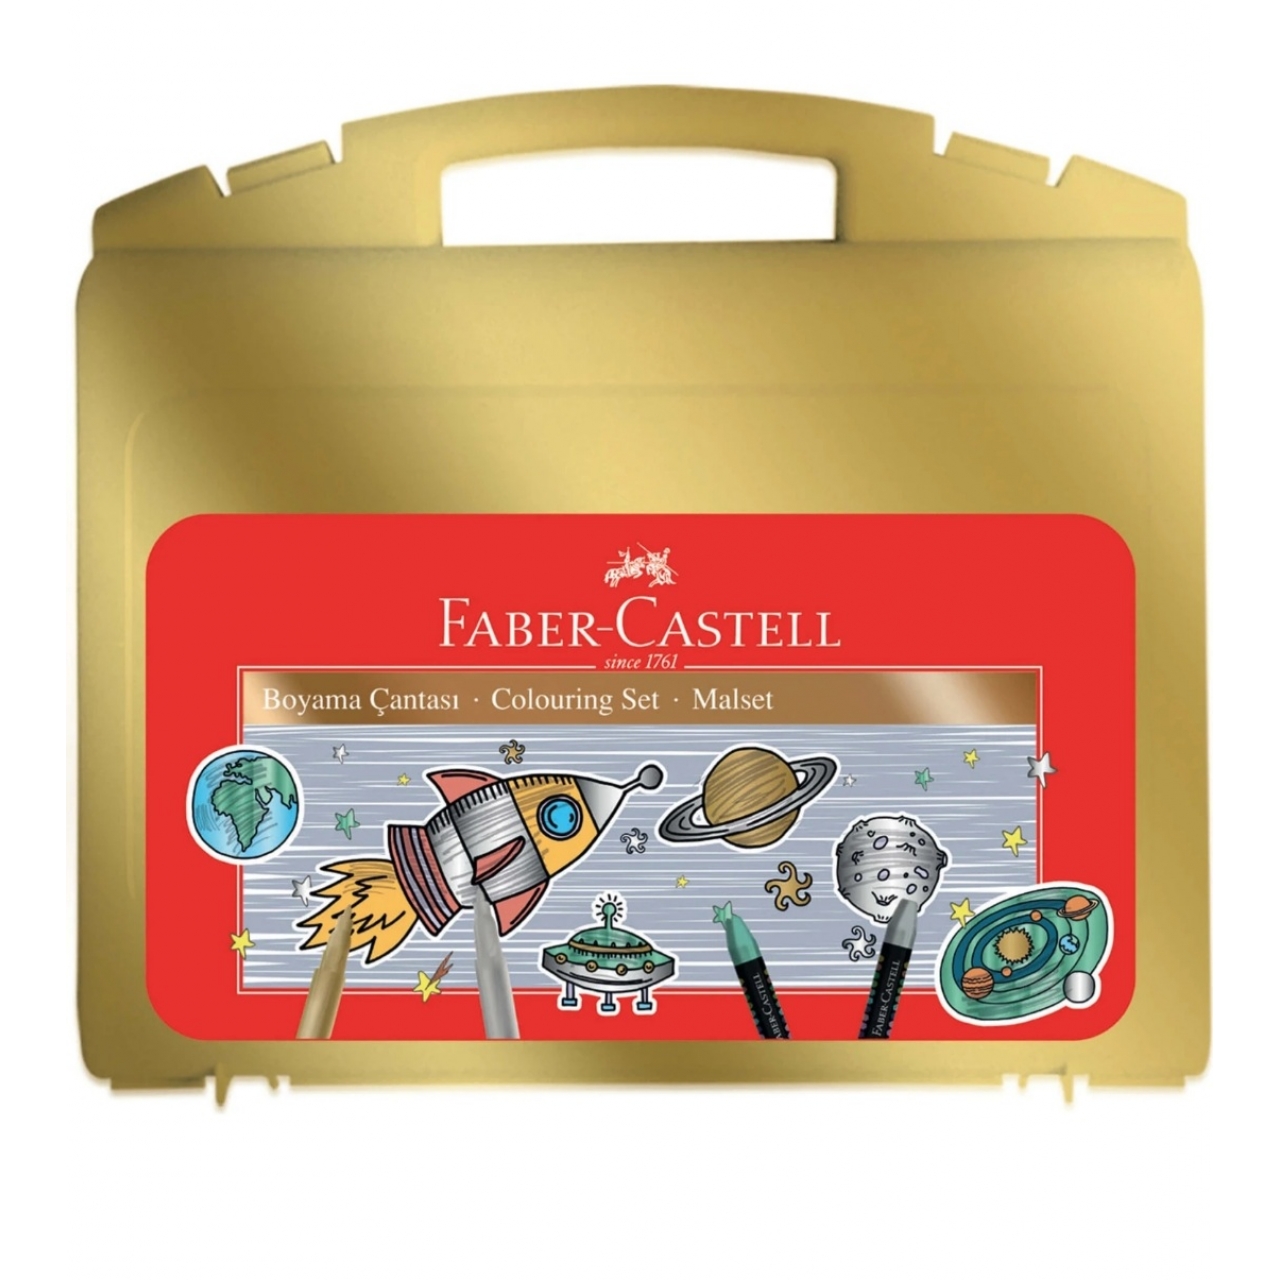 Faber-Castell Metalik Renkler Boyama Çantası